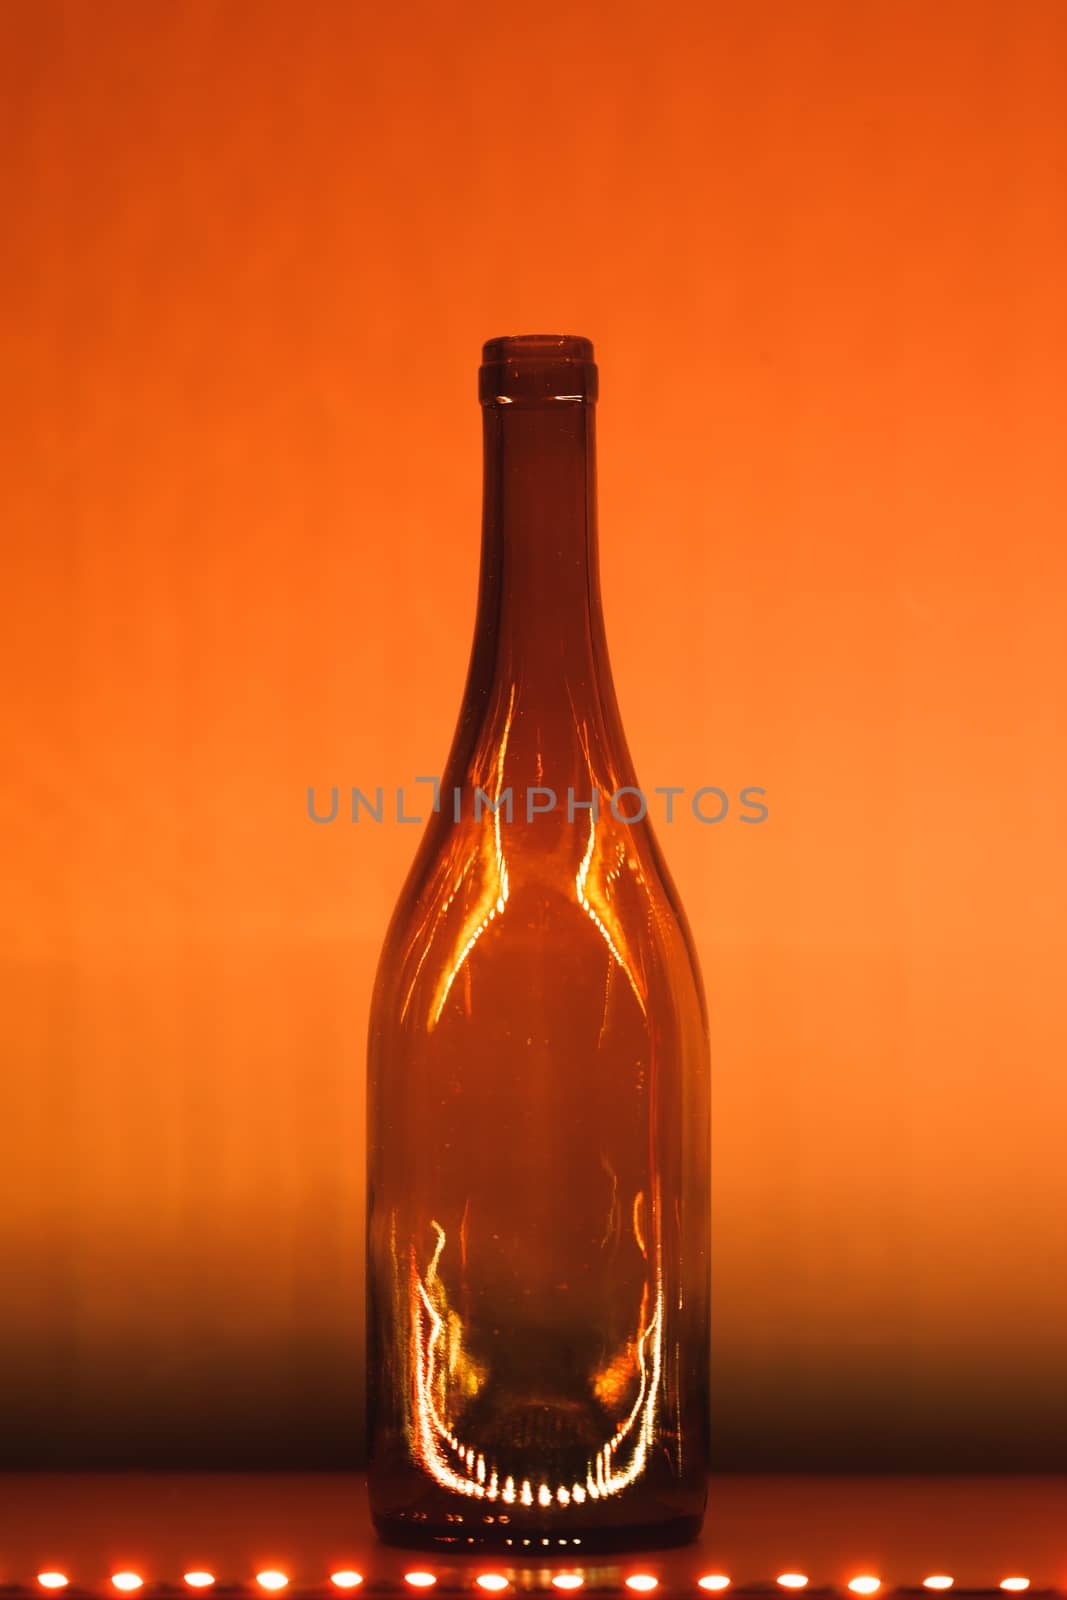 abstract empty wine bottle with orange led illumination